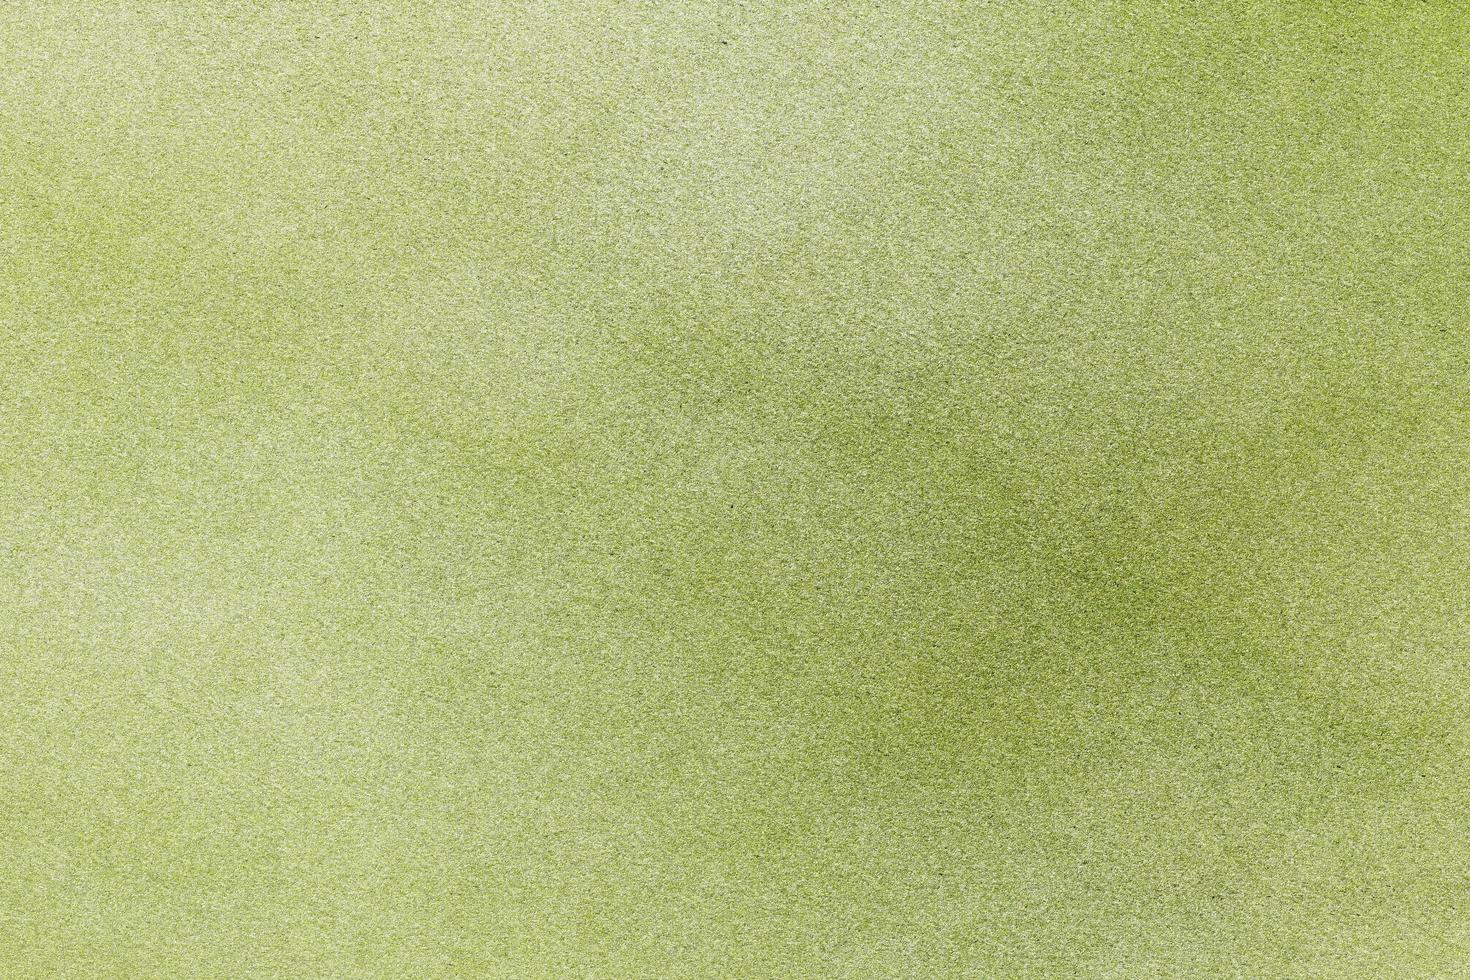 textur av grov ljusgrön sand tvätt, detalj sten, abstrakt bakgrund foto